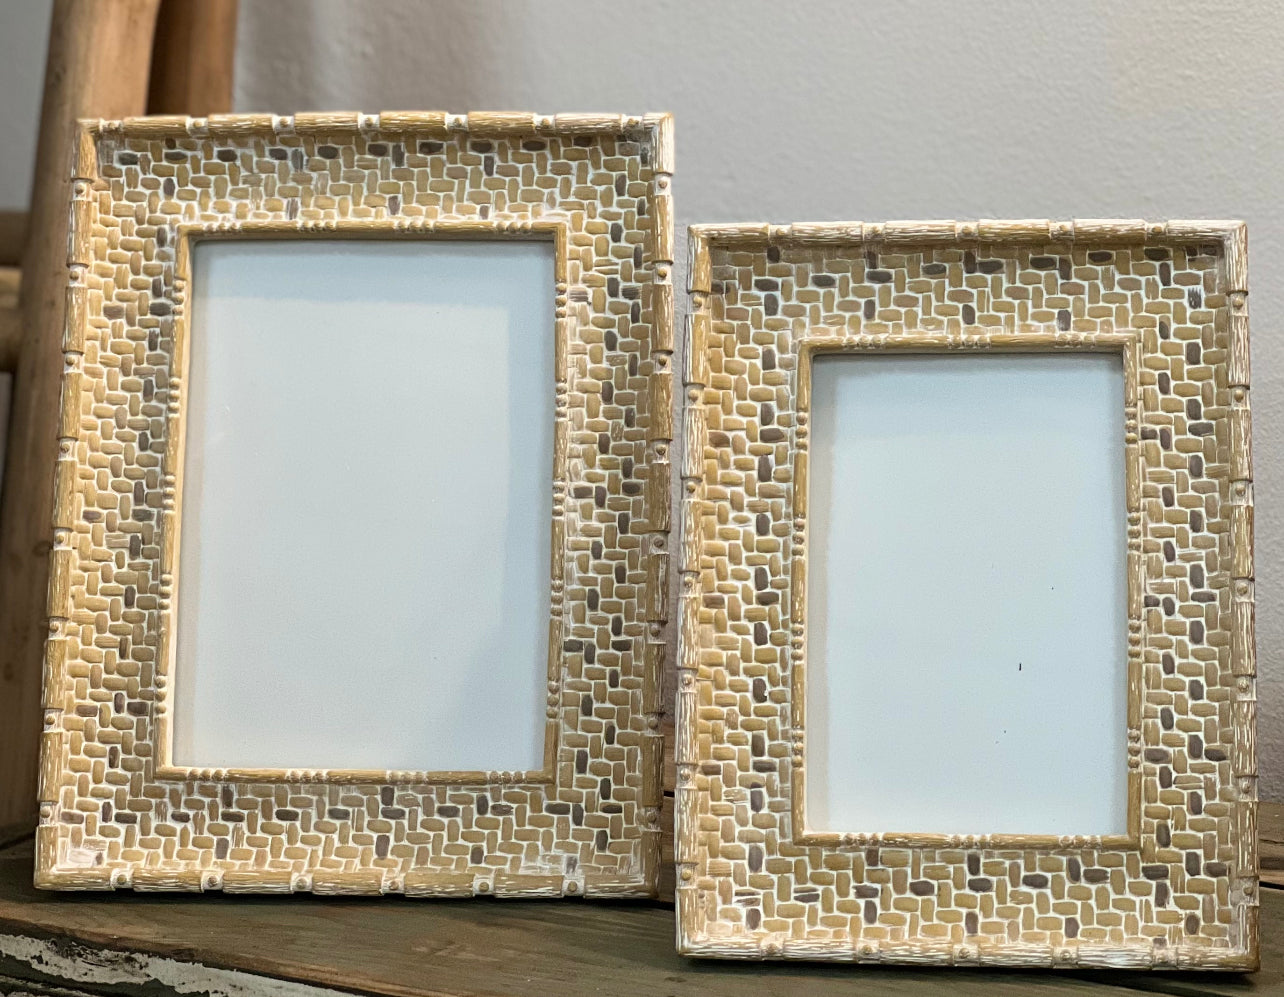 Weave & Cross Frame, White, 4x6 Photo, 8, Resin